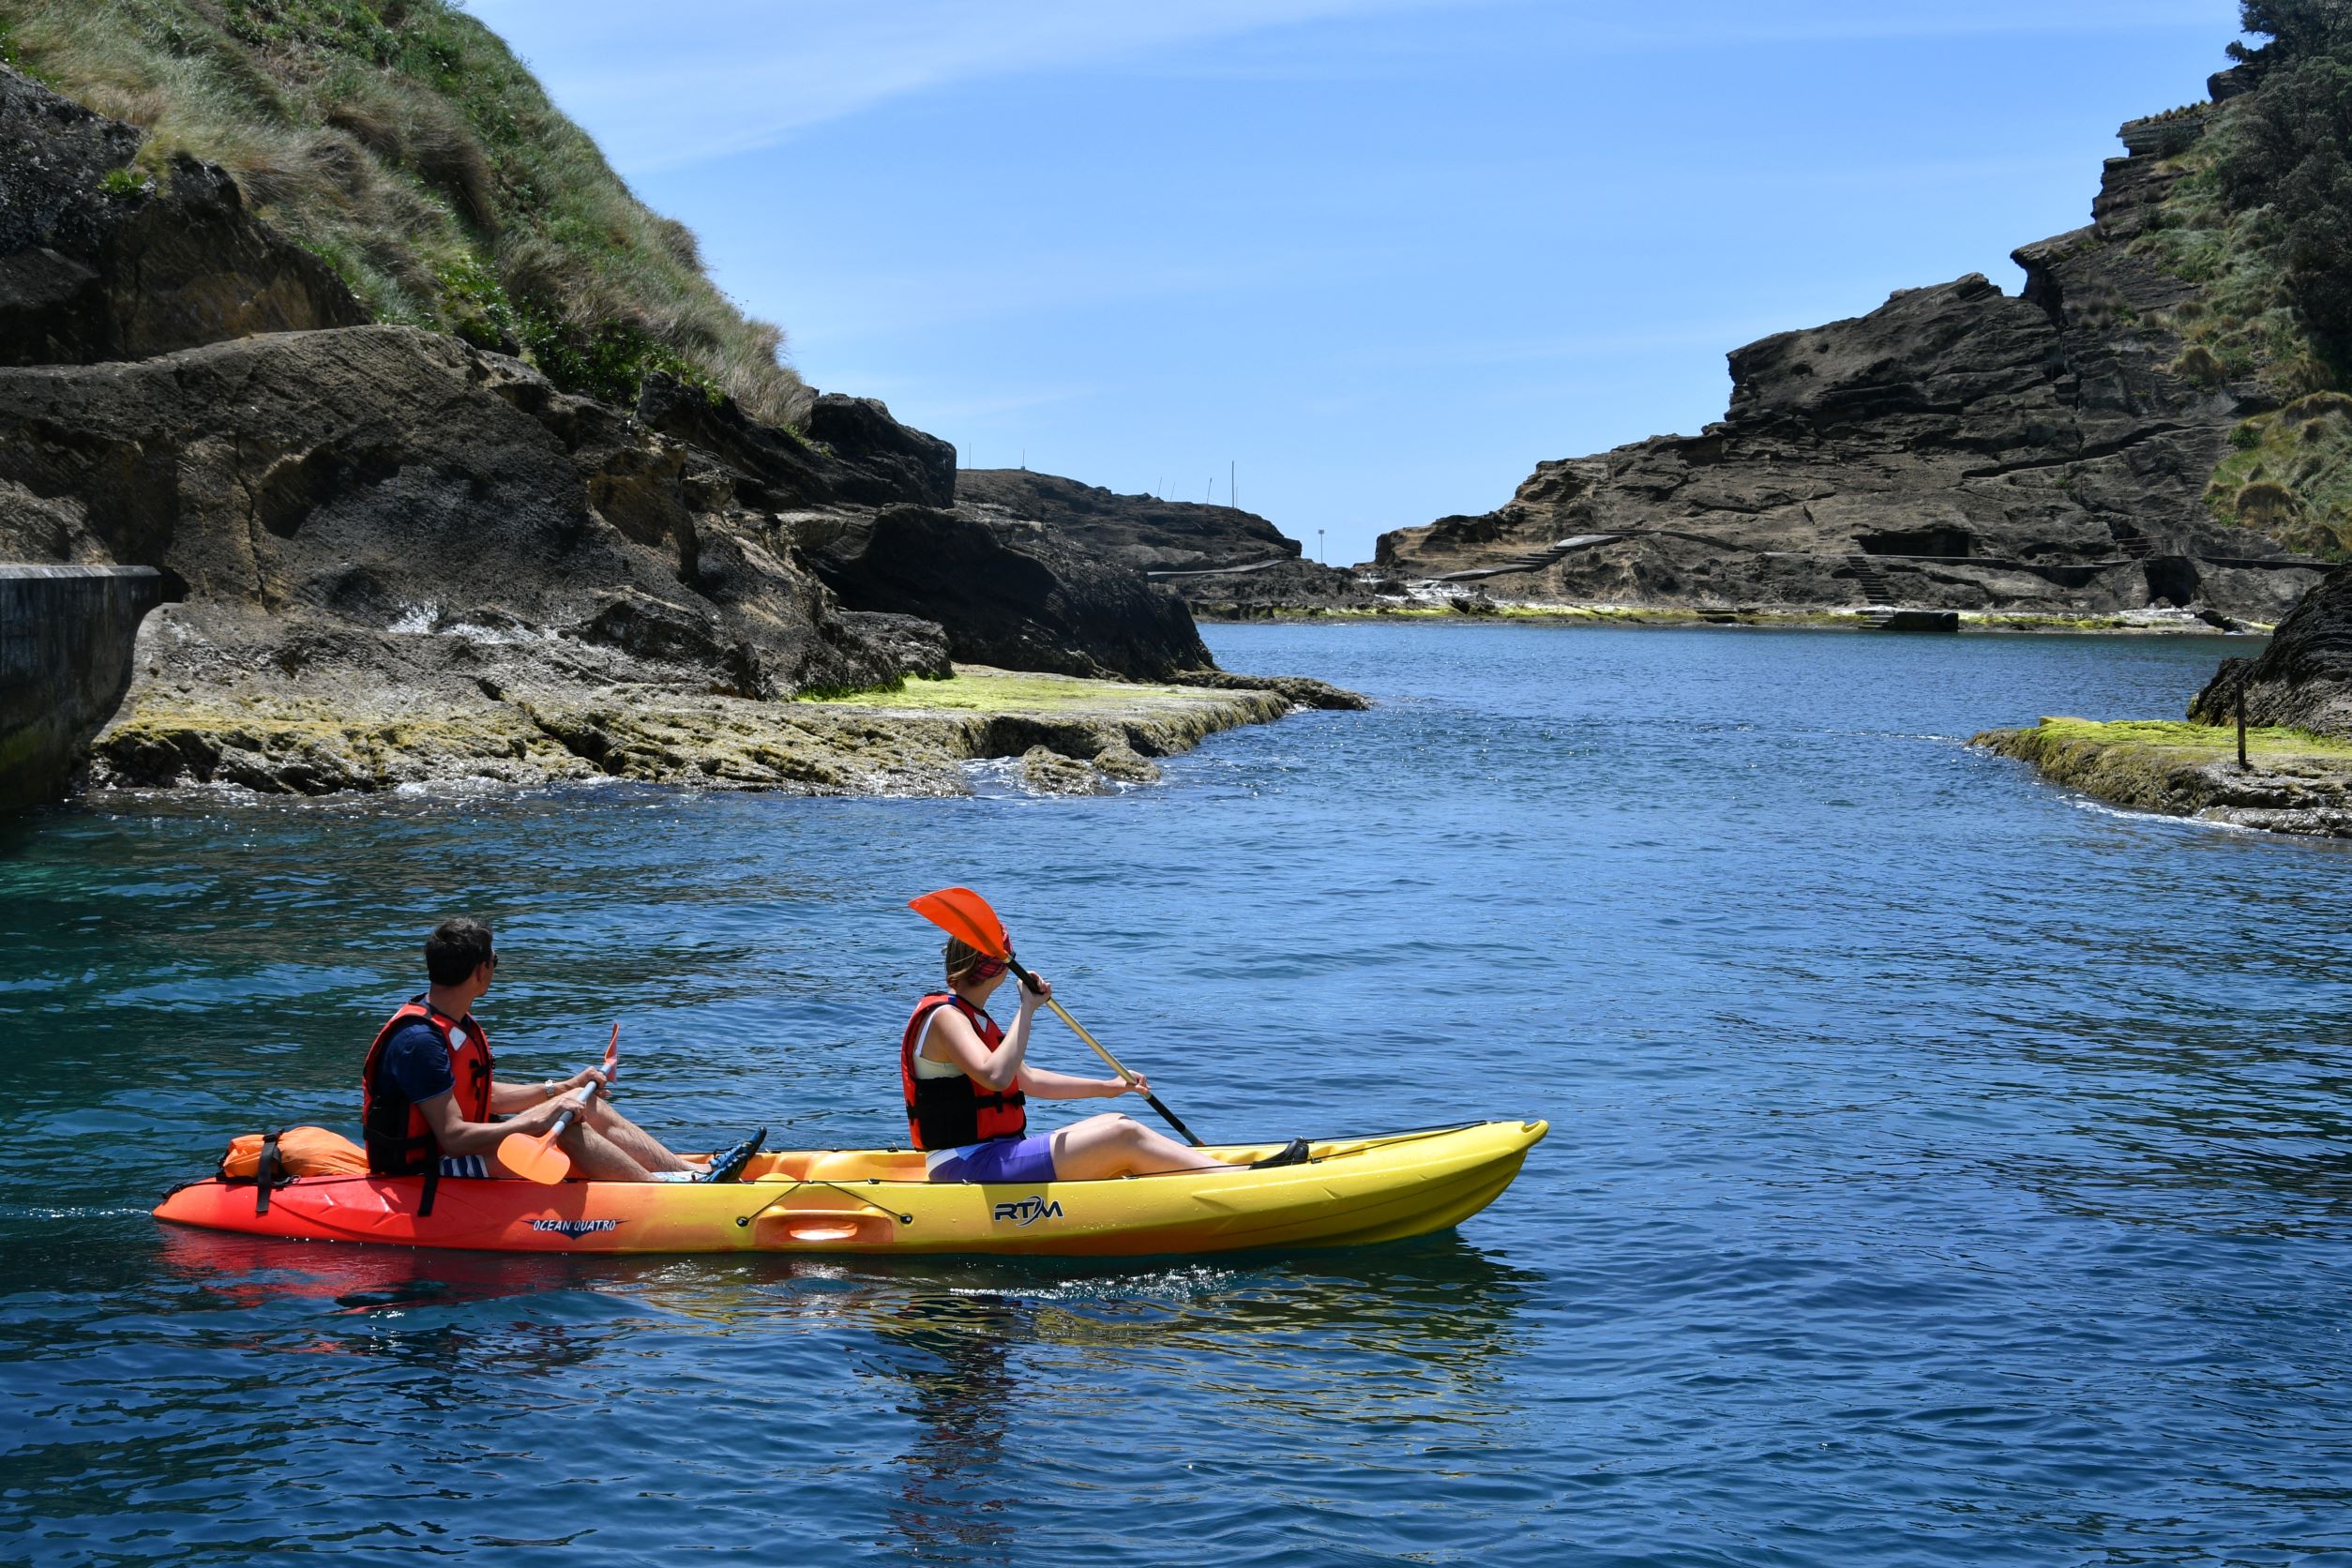 Kayak rental in the islet of Vila Franca Campo